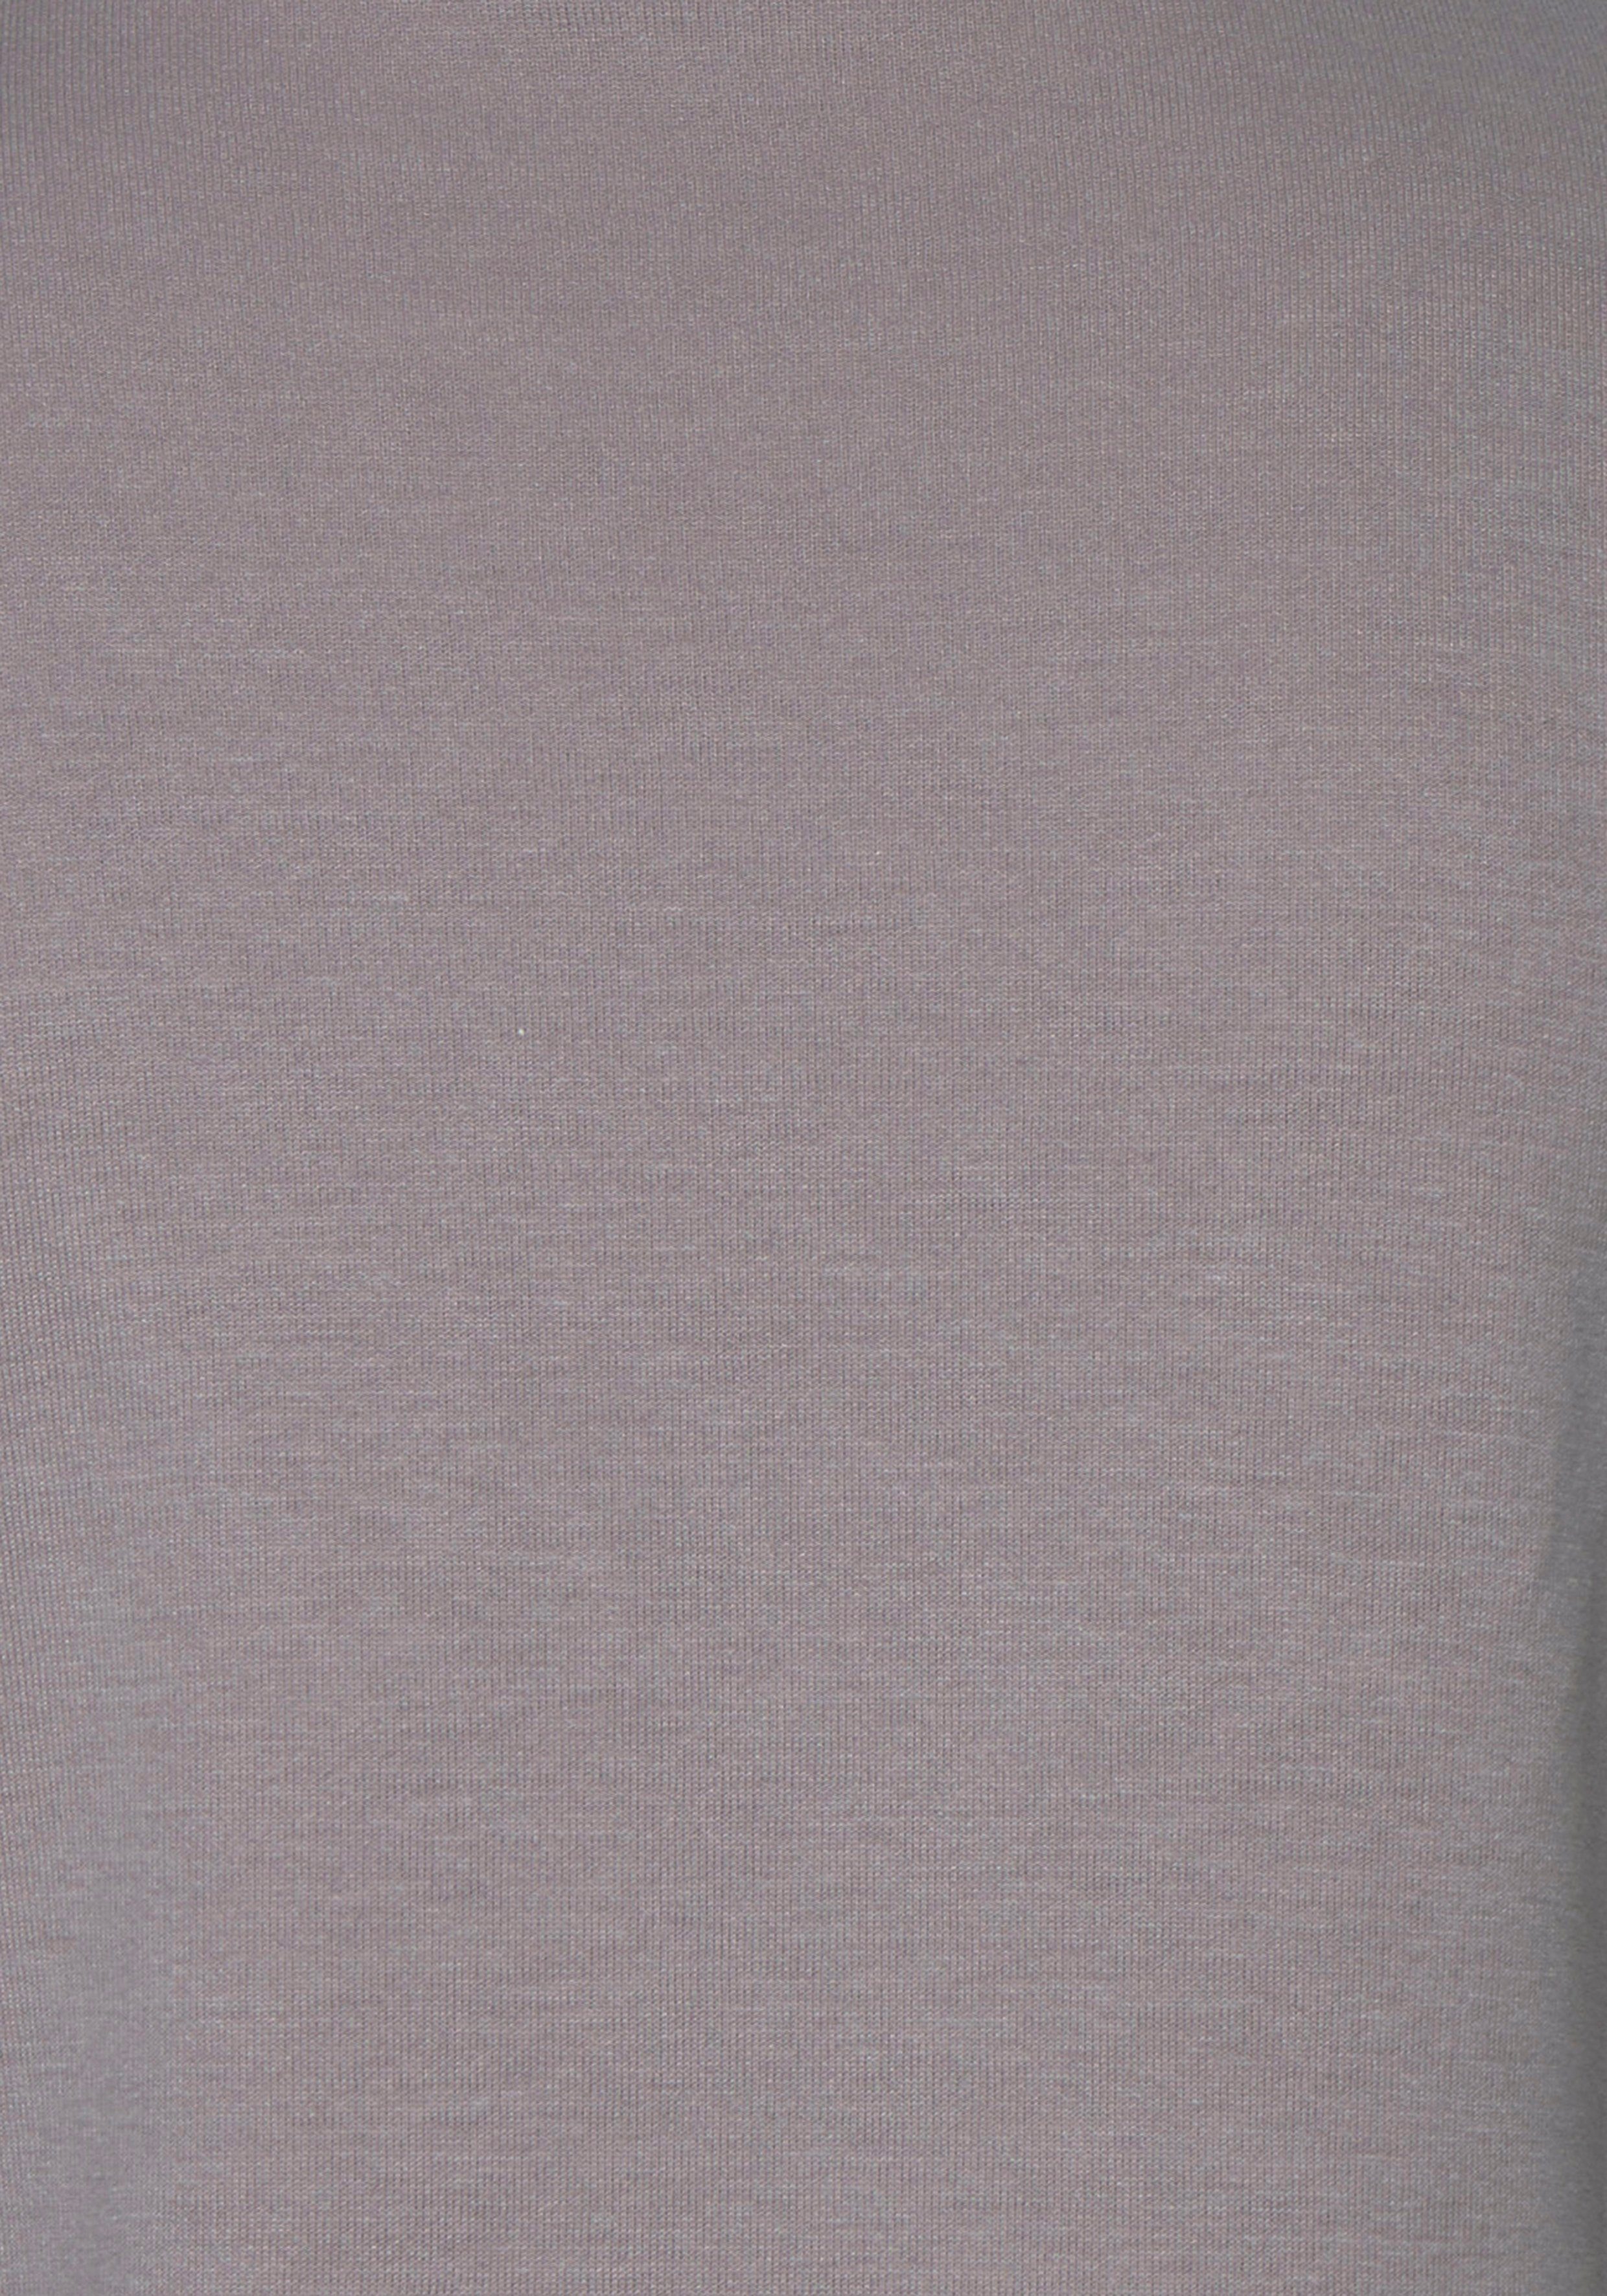 Loungeanzug und Logodruck mit rauchrosa Sweatshirt Loungewear Stickerei, Bench.